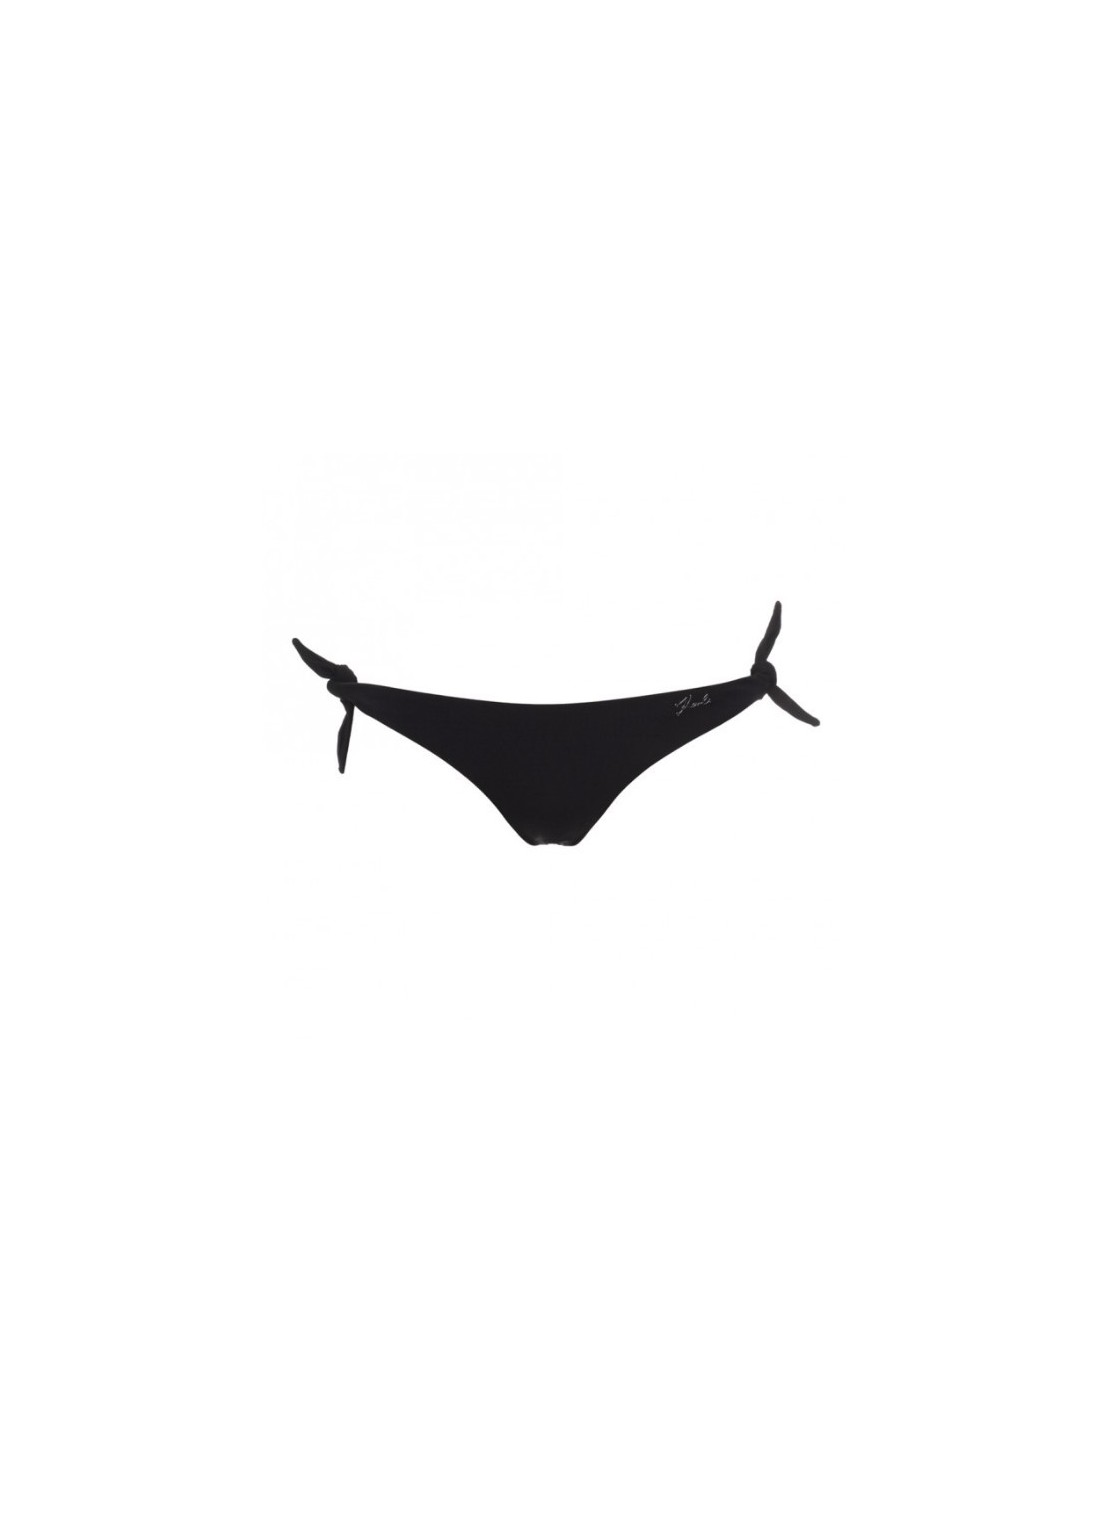 Bikini karl lagerfeld printed logo - kl22wbt02 black talla L
 